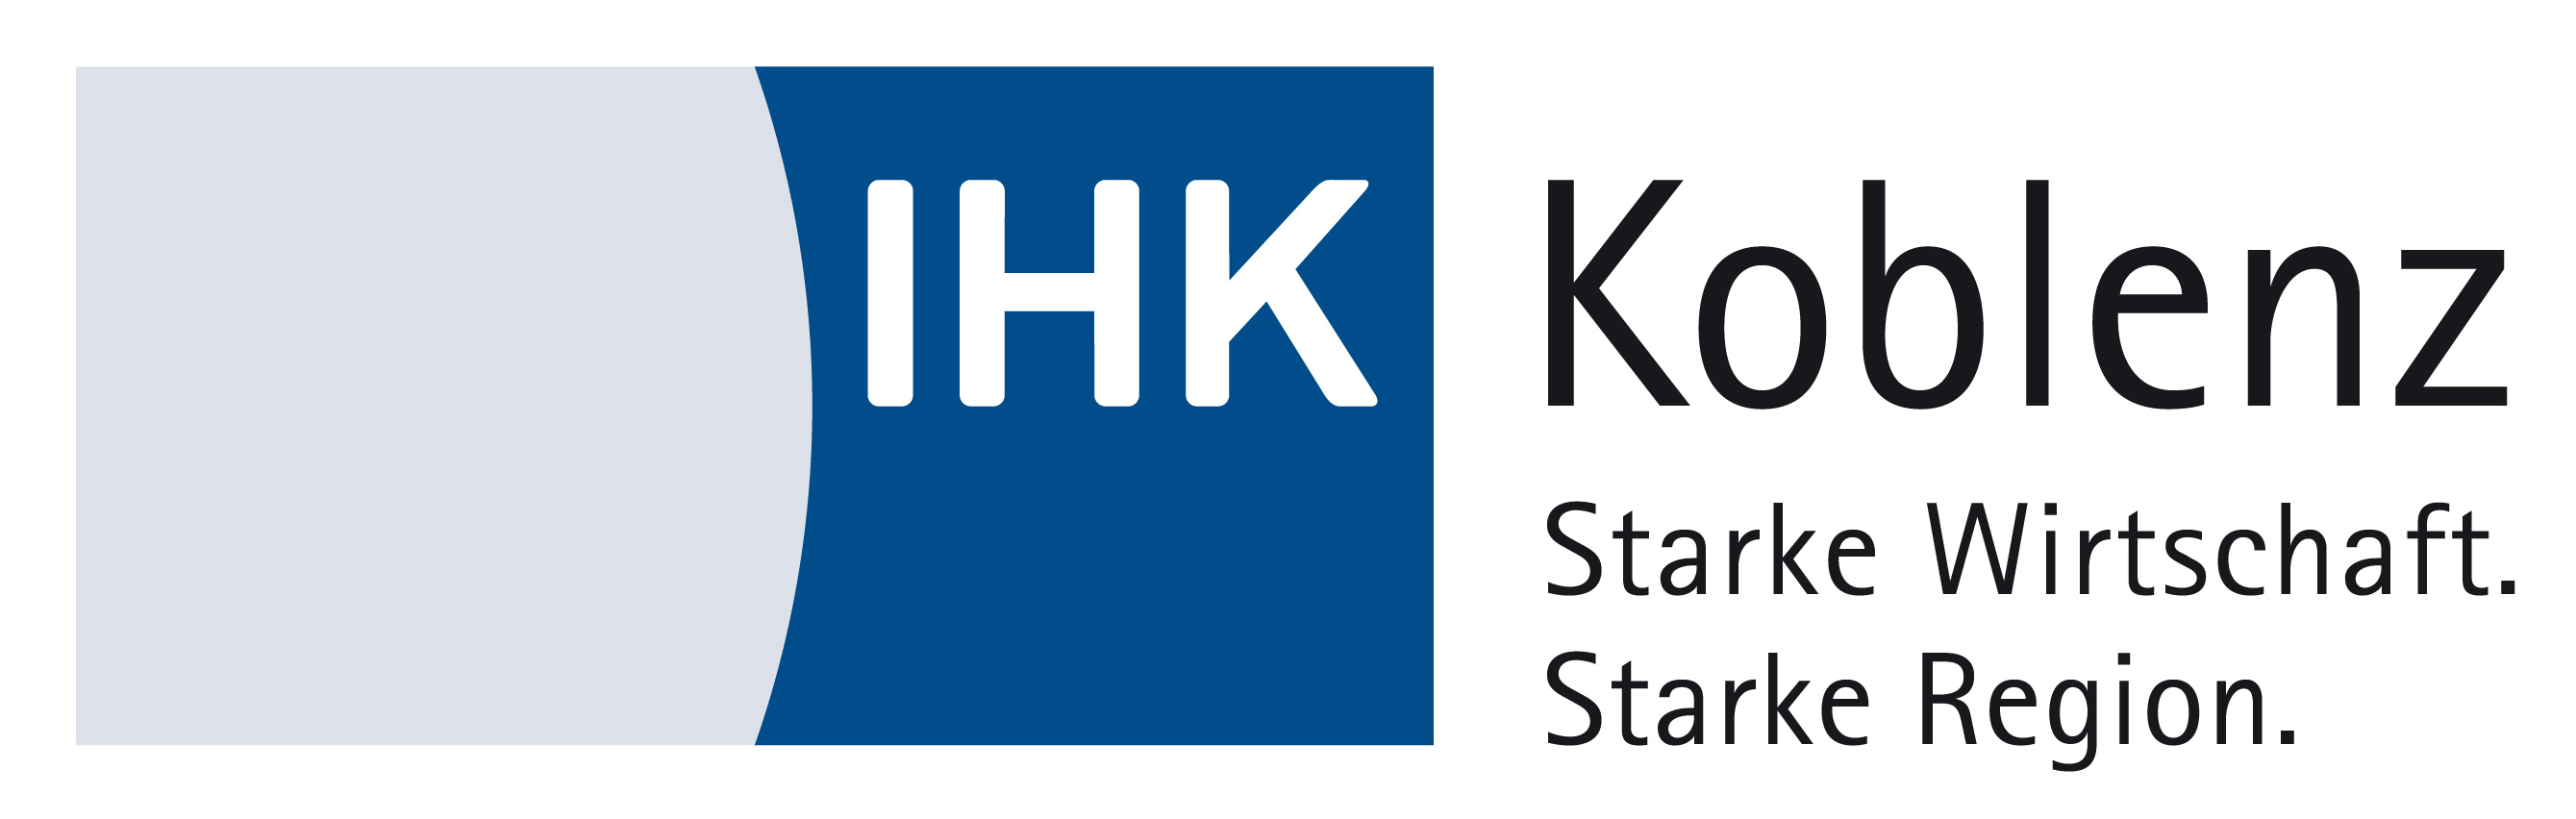 IHK-Akademie Koblenz e.V.